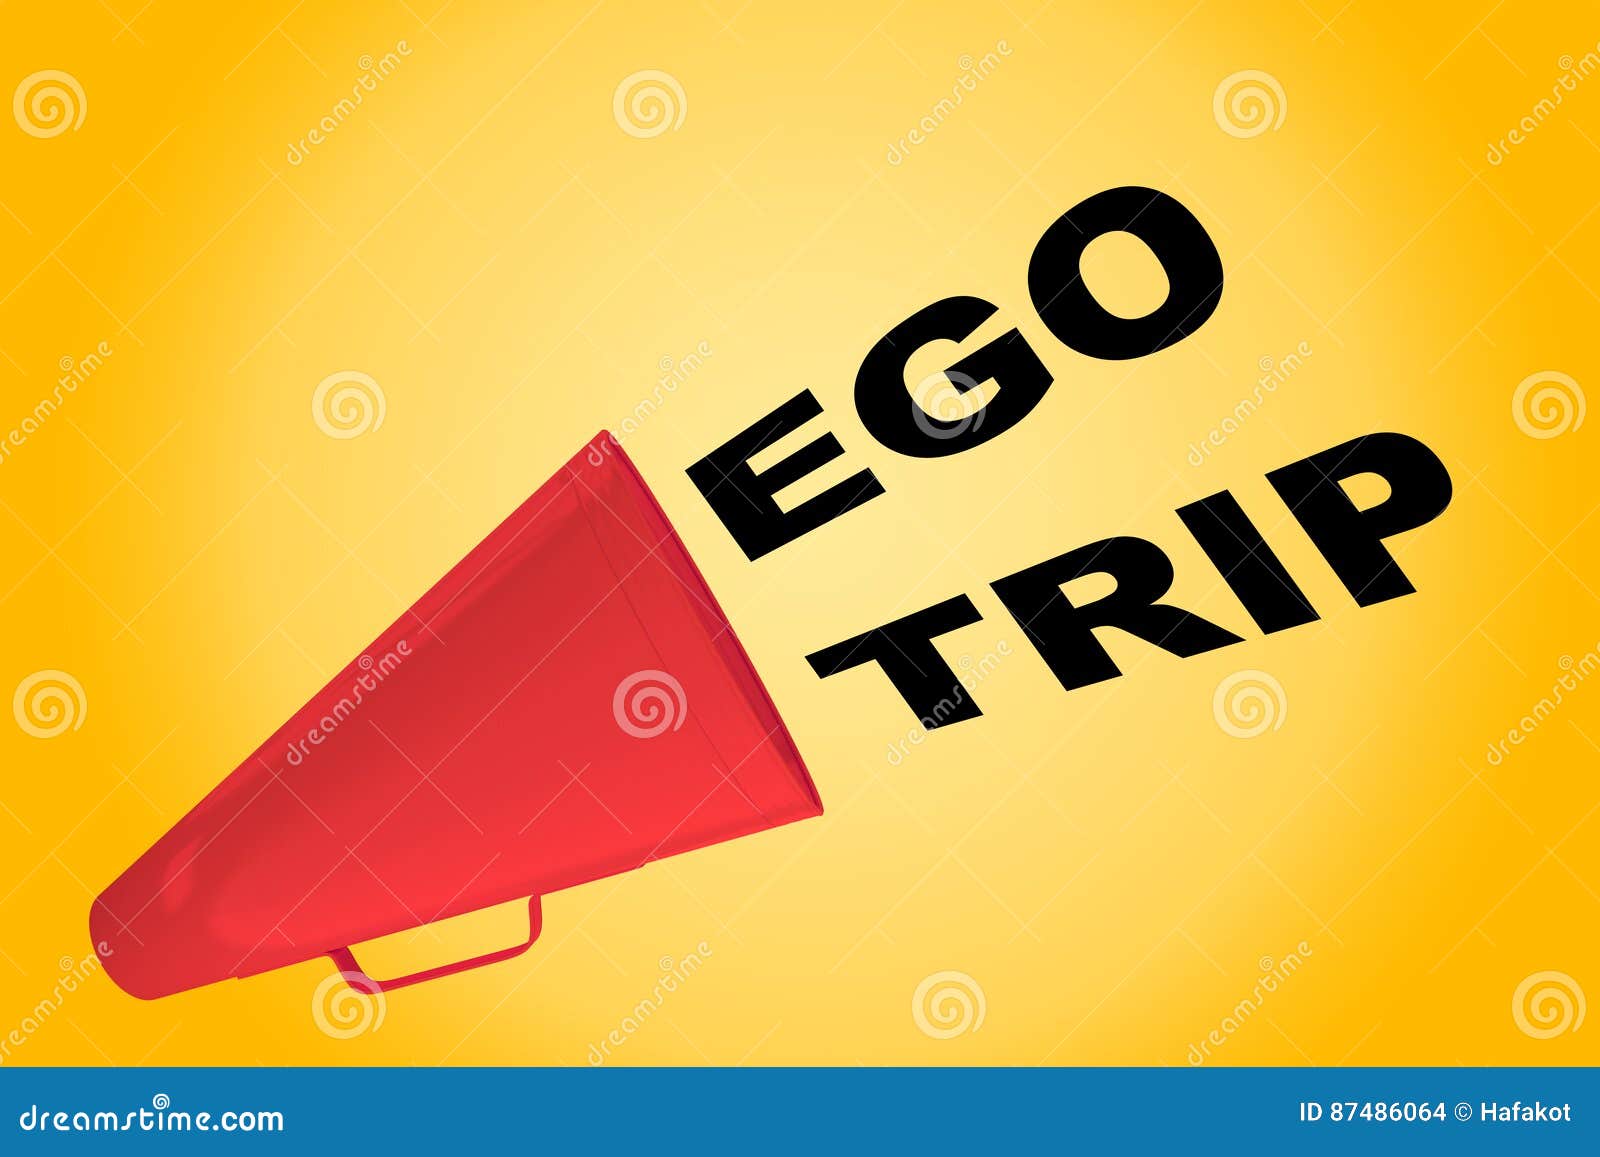 ego trip interpretation